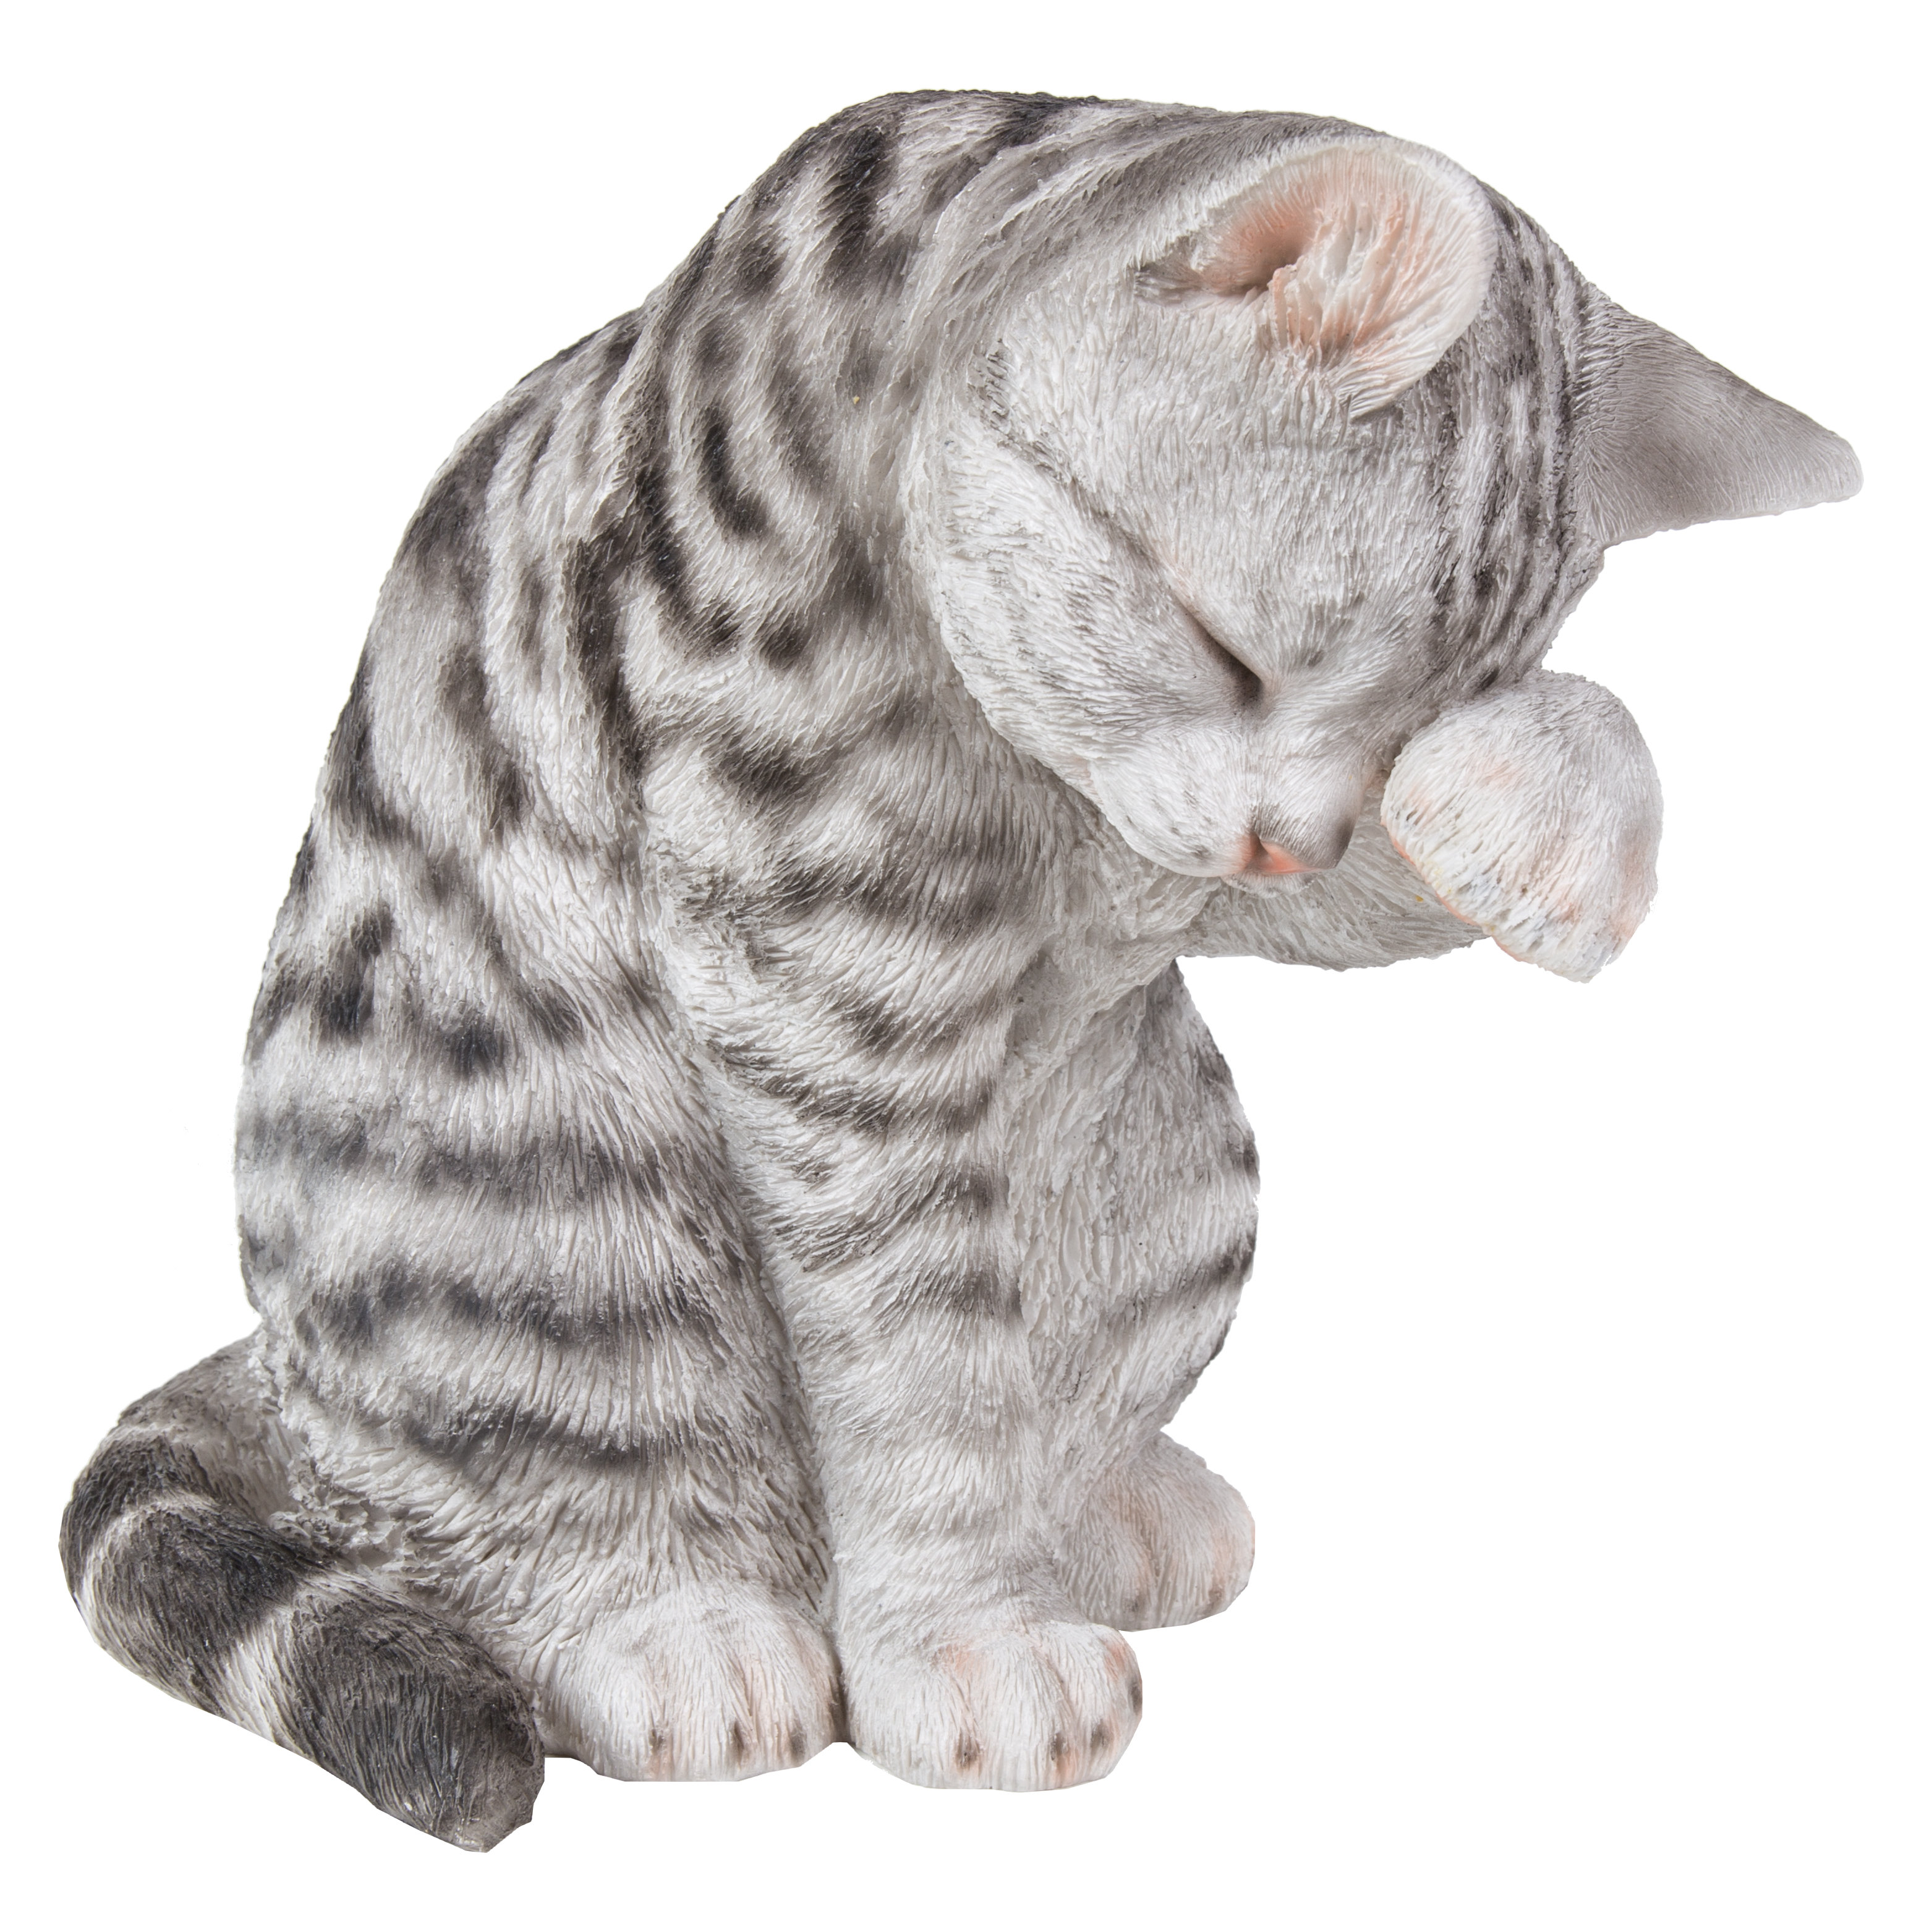 Figurine chat Chaton en résine - 12 cm